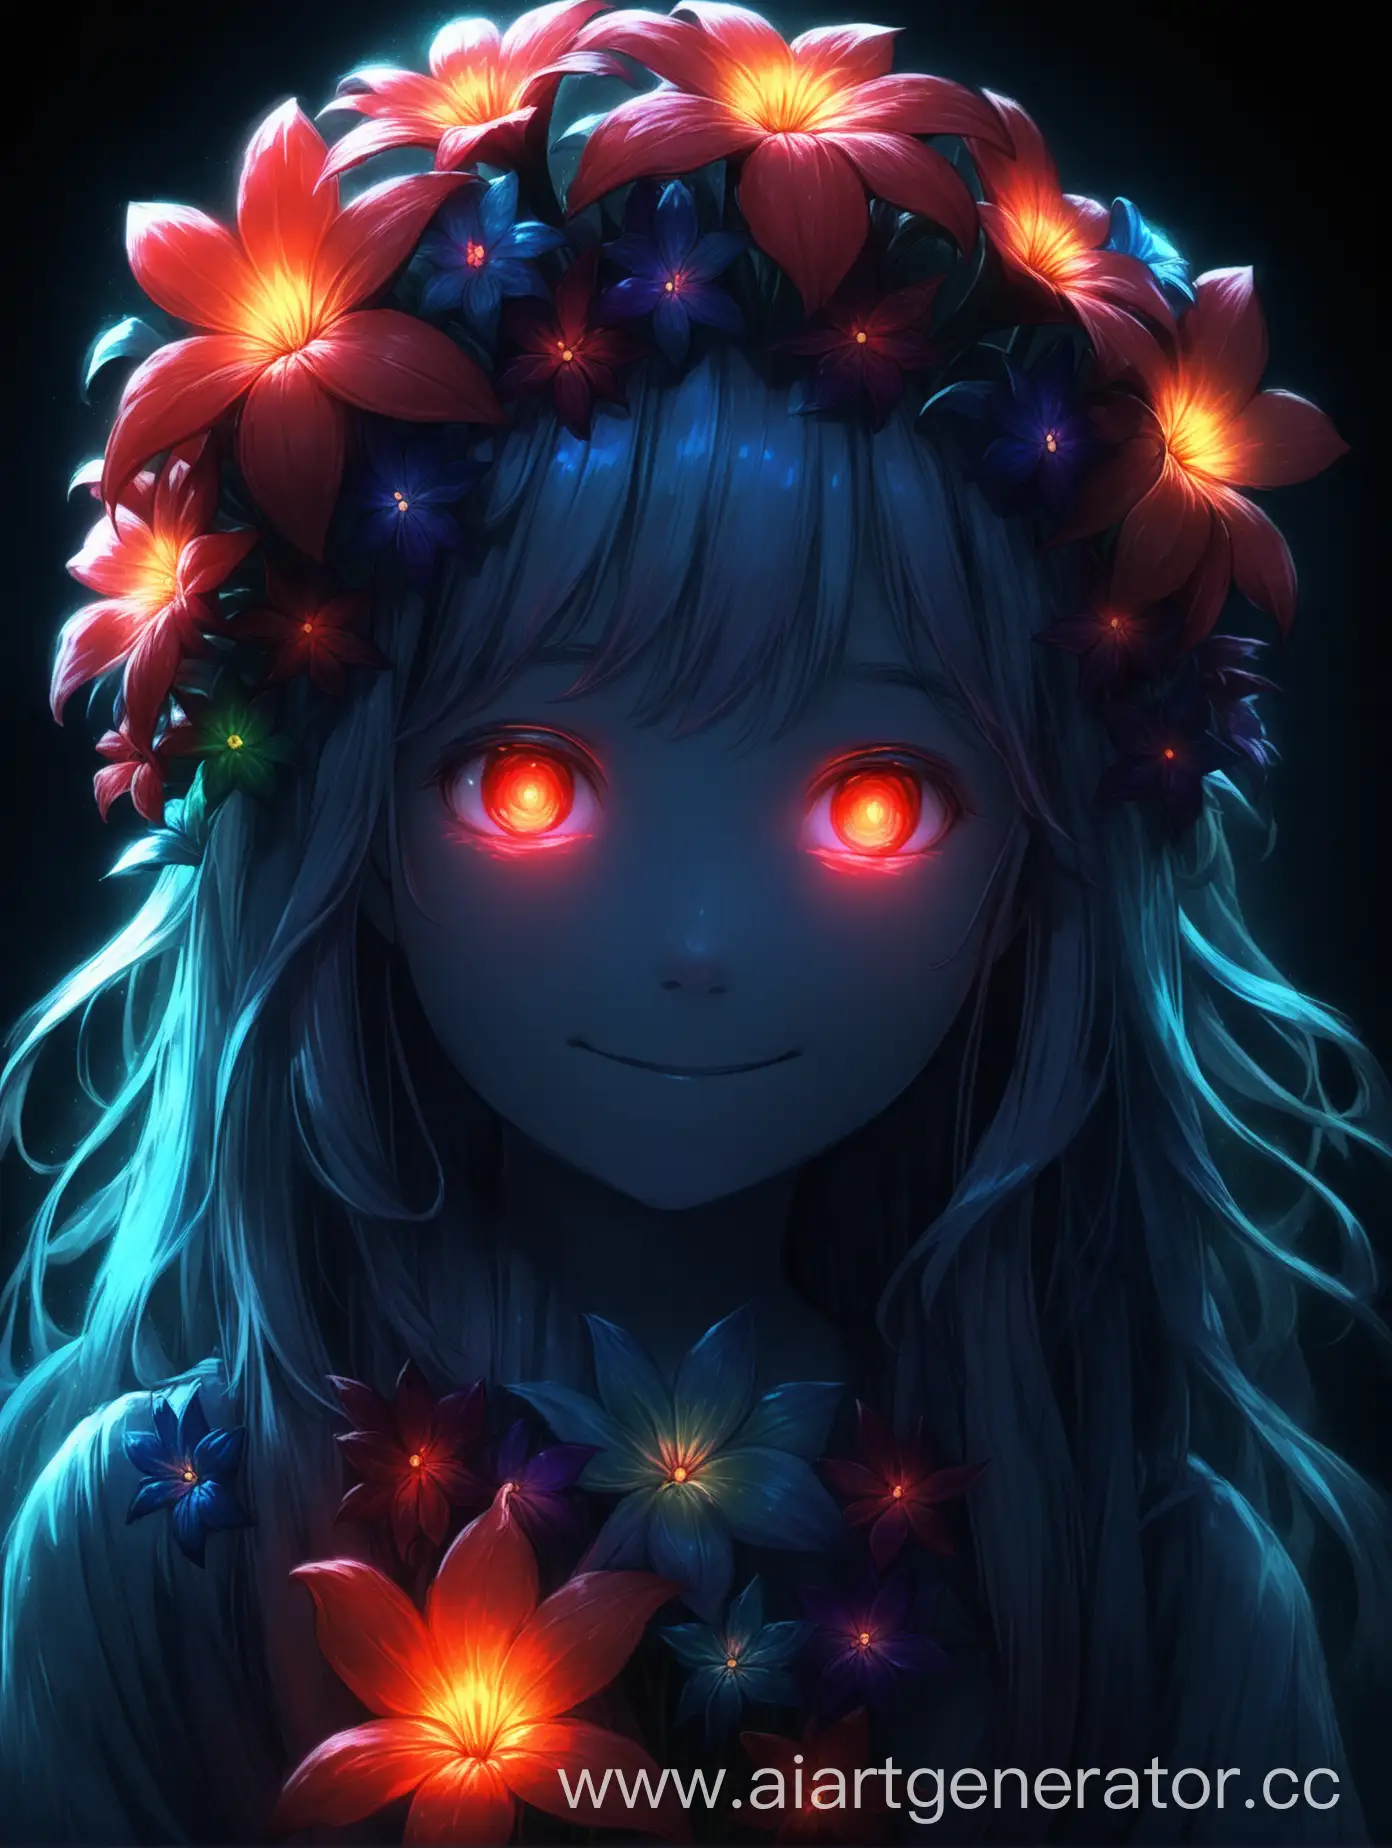 Spectral-Glowing-Flower-Girl-Portrait-in-the-Dark